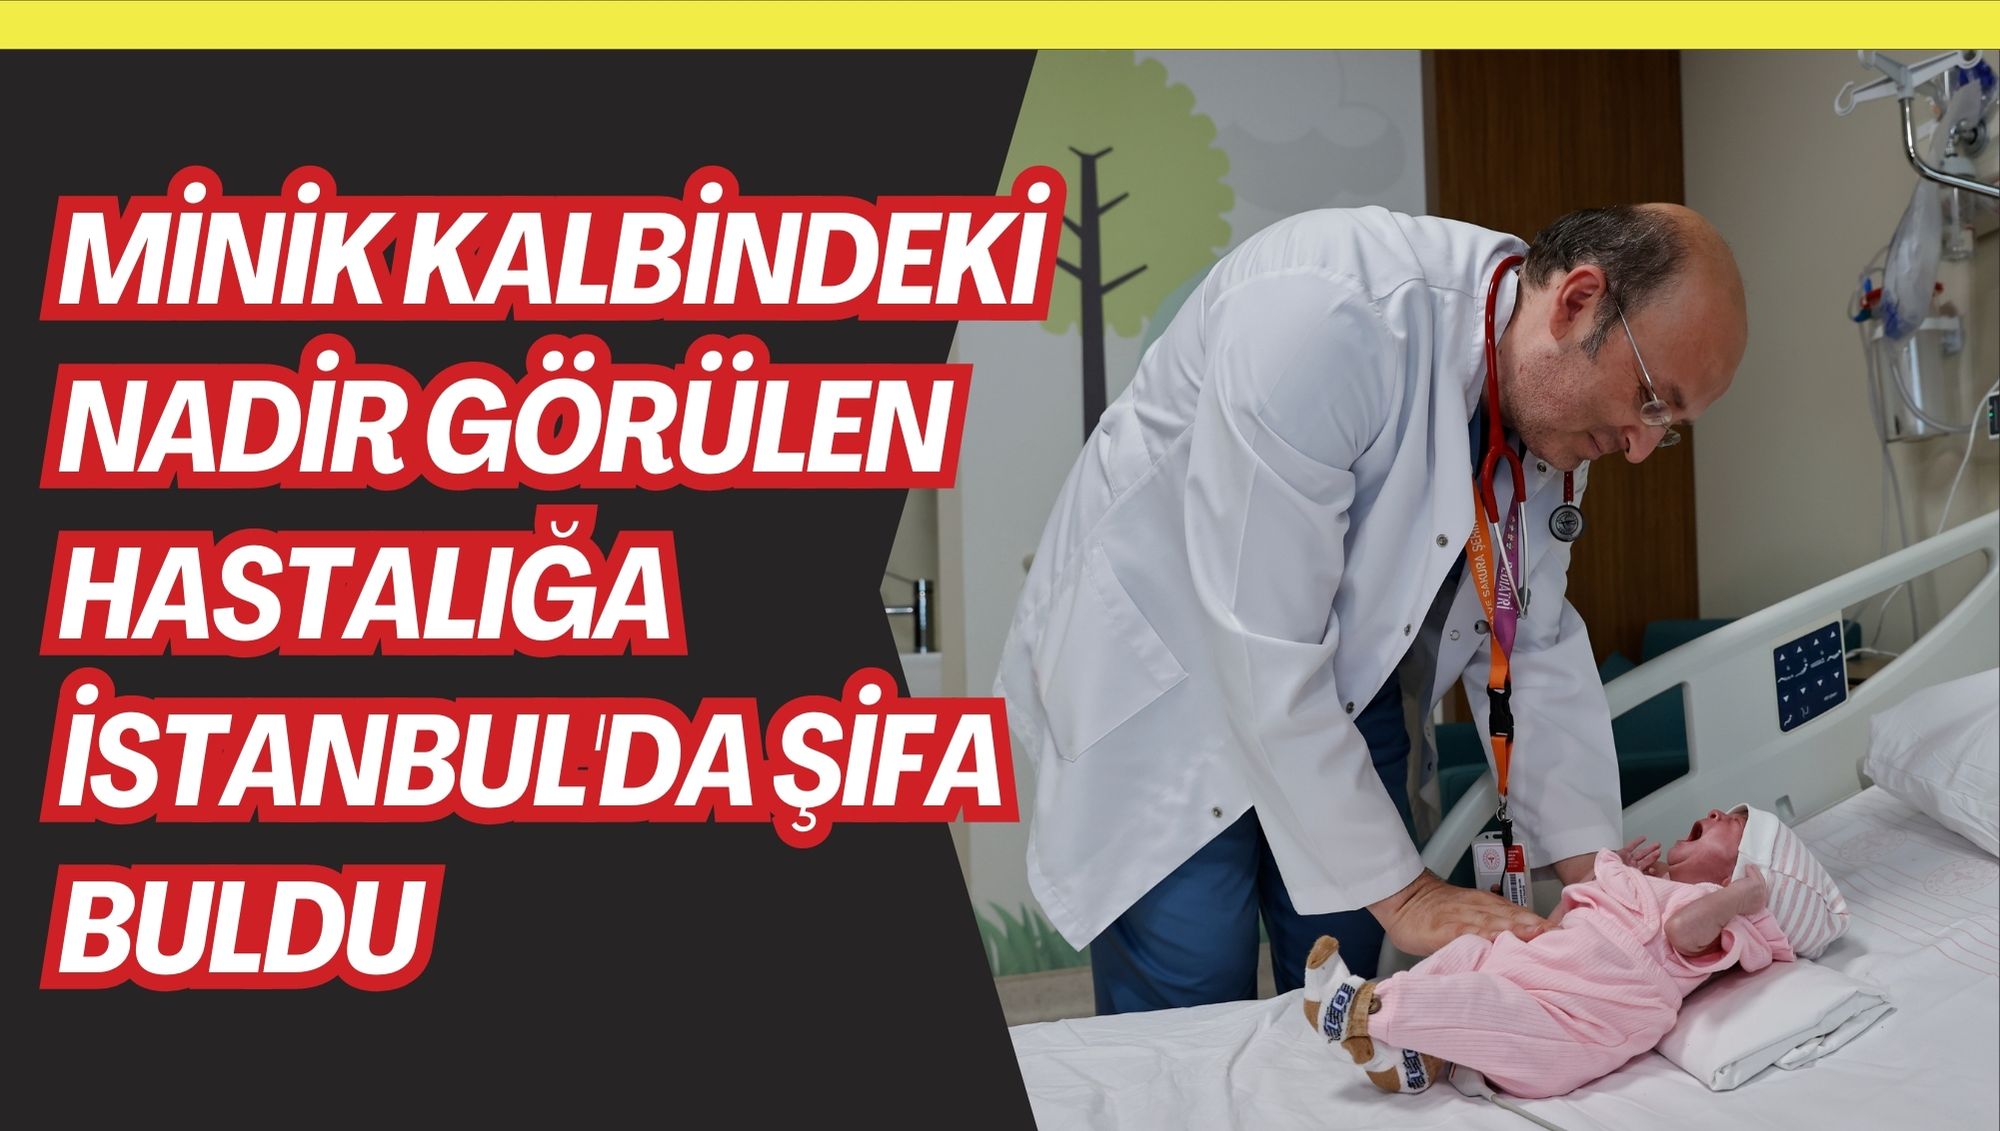 Minik kalbindeki nadir görülen hastalığa İstanbul'da şifa buldu